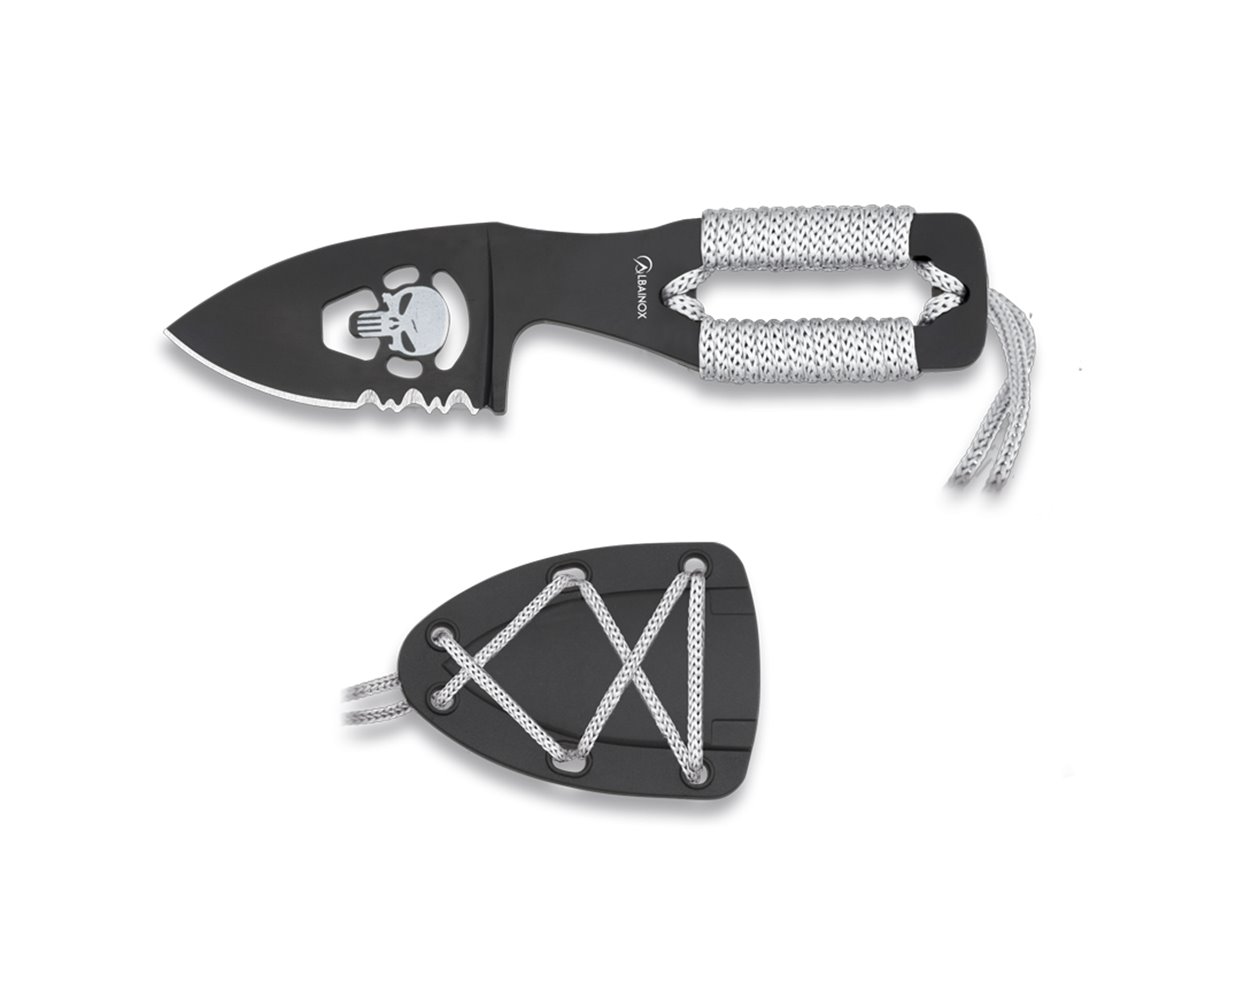 ΜΑΧΑΙΡΙ ALBAINOX  Skull knife. Blade 5 cm, 32450